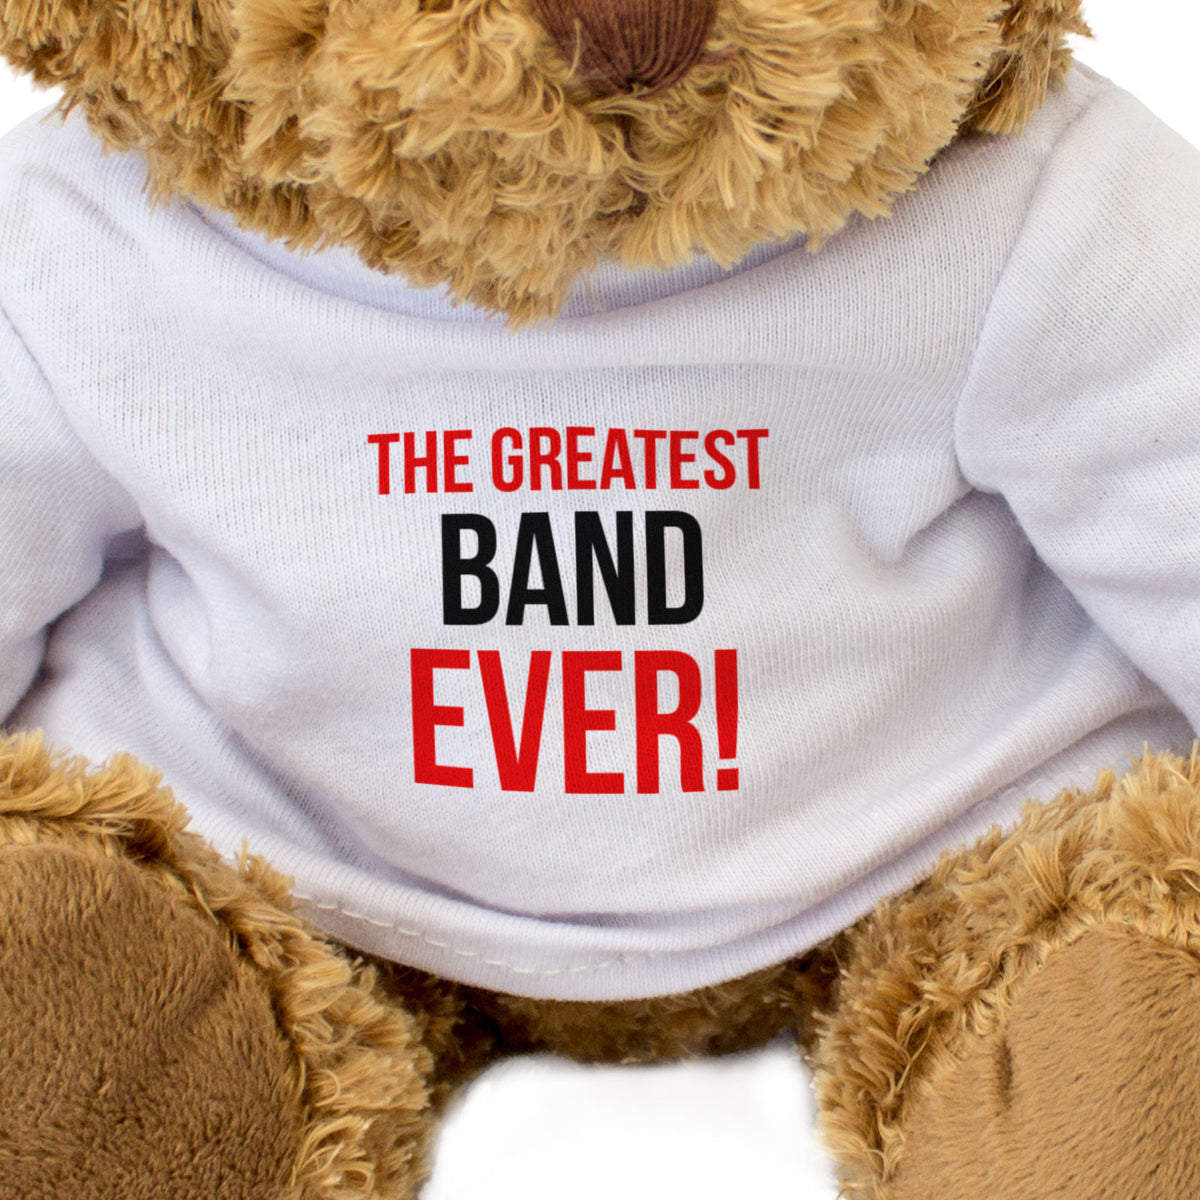 The Greatest Band Ever - Teddy Bear